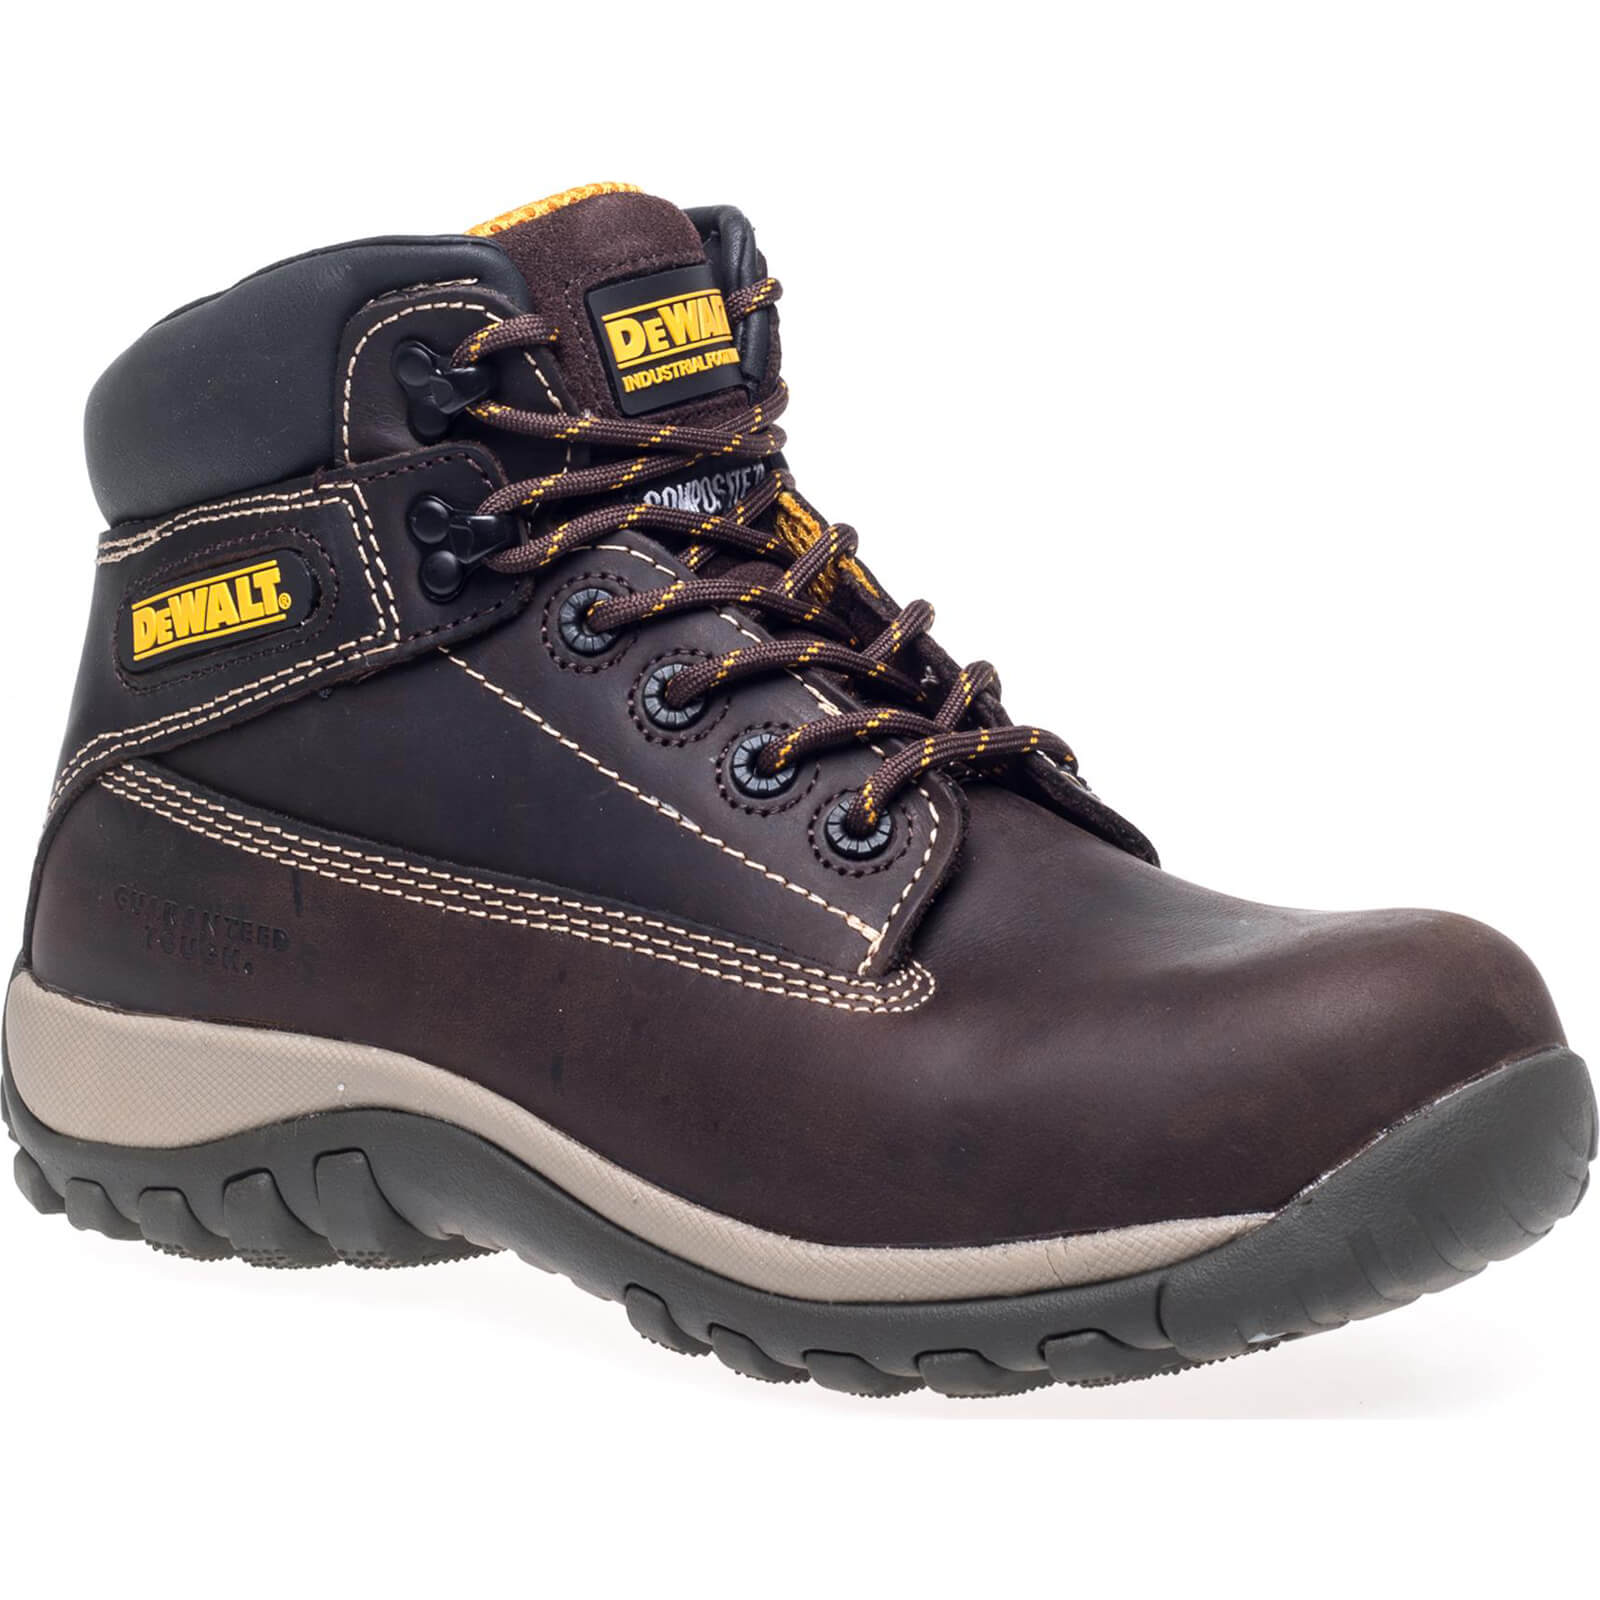 DeWalt Hammer Non Metallic Safety Boots Brown Size 6